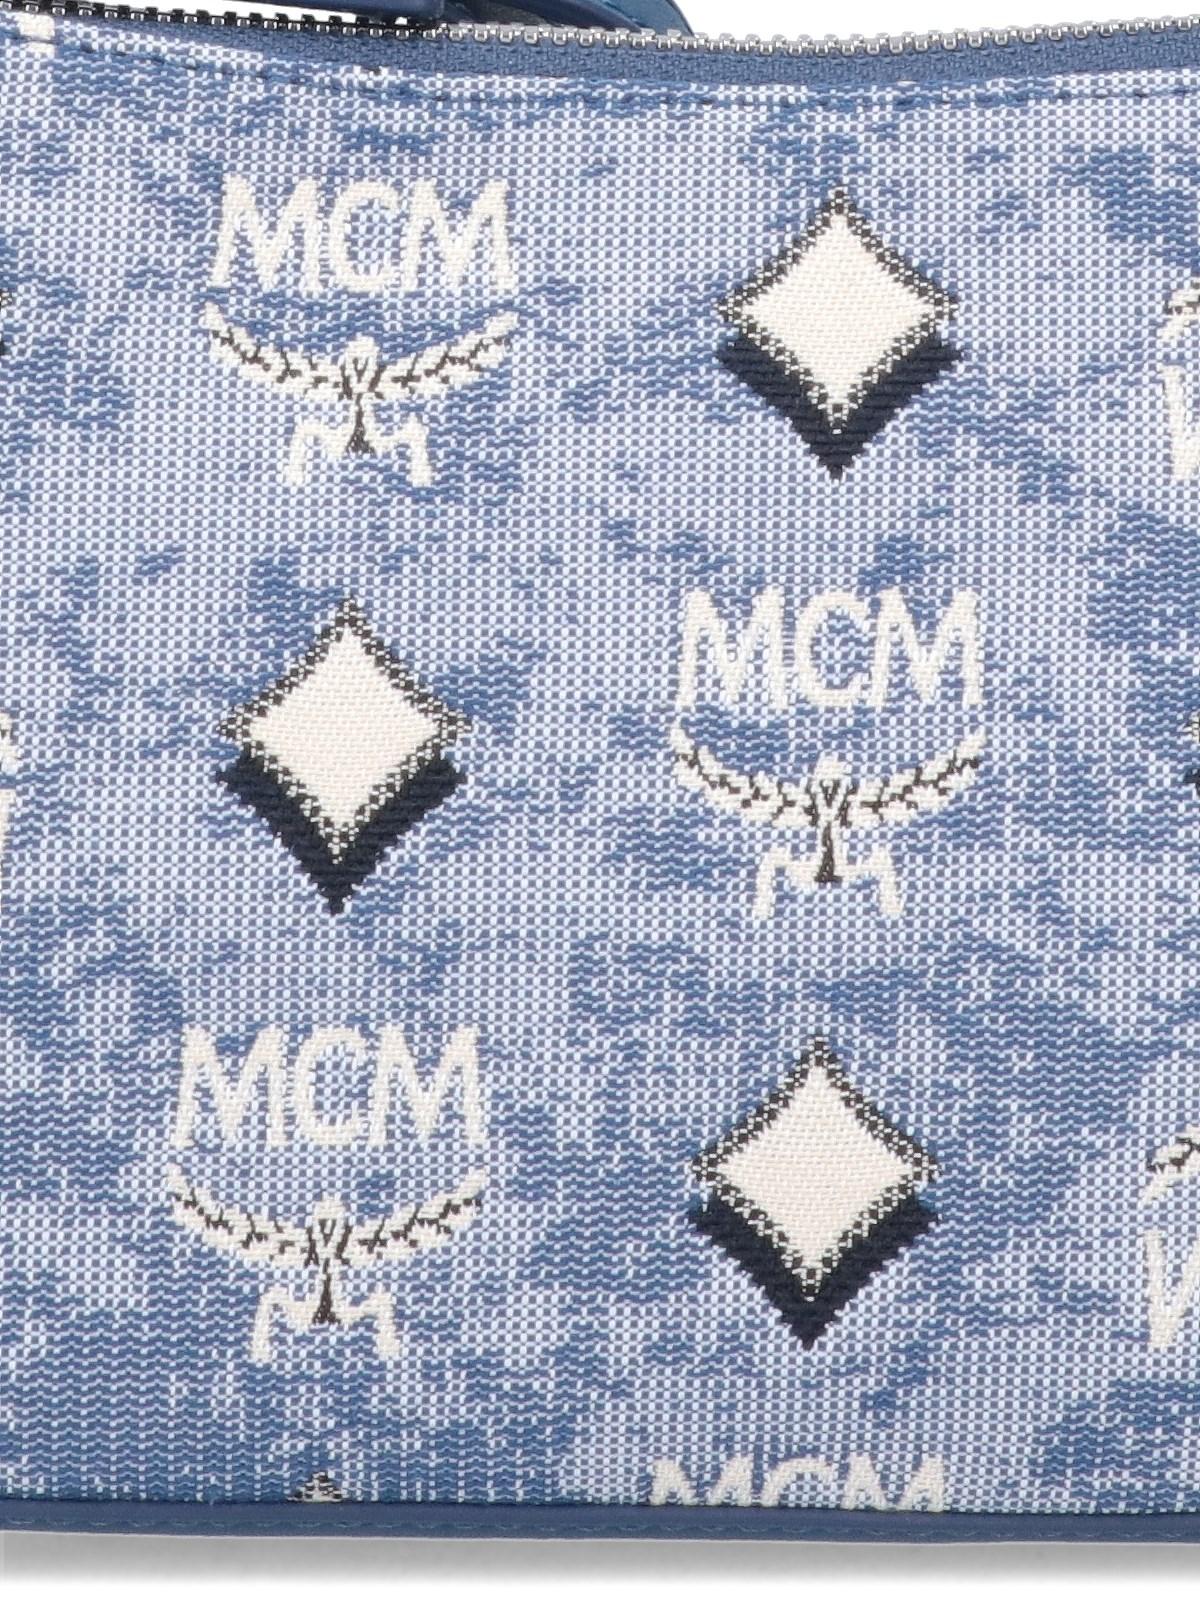 MCM Mini Shoulder Bag 'aren' in Blue